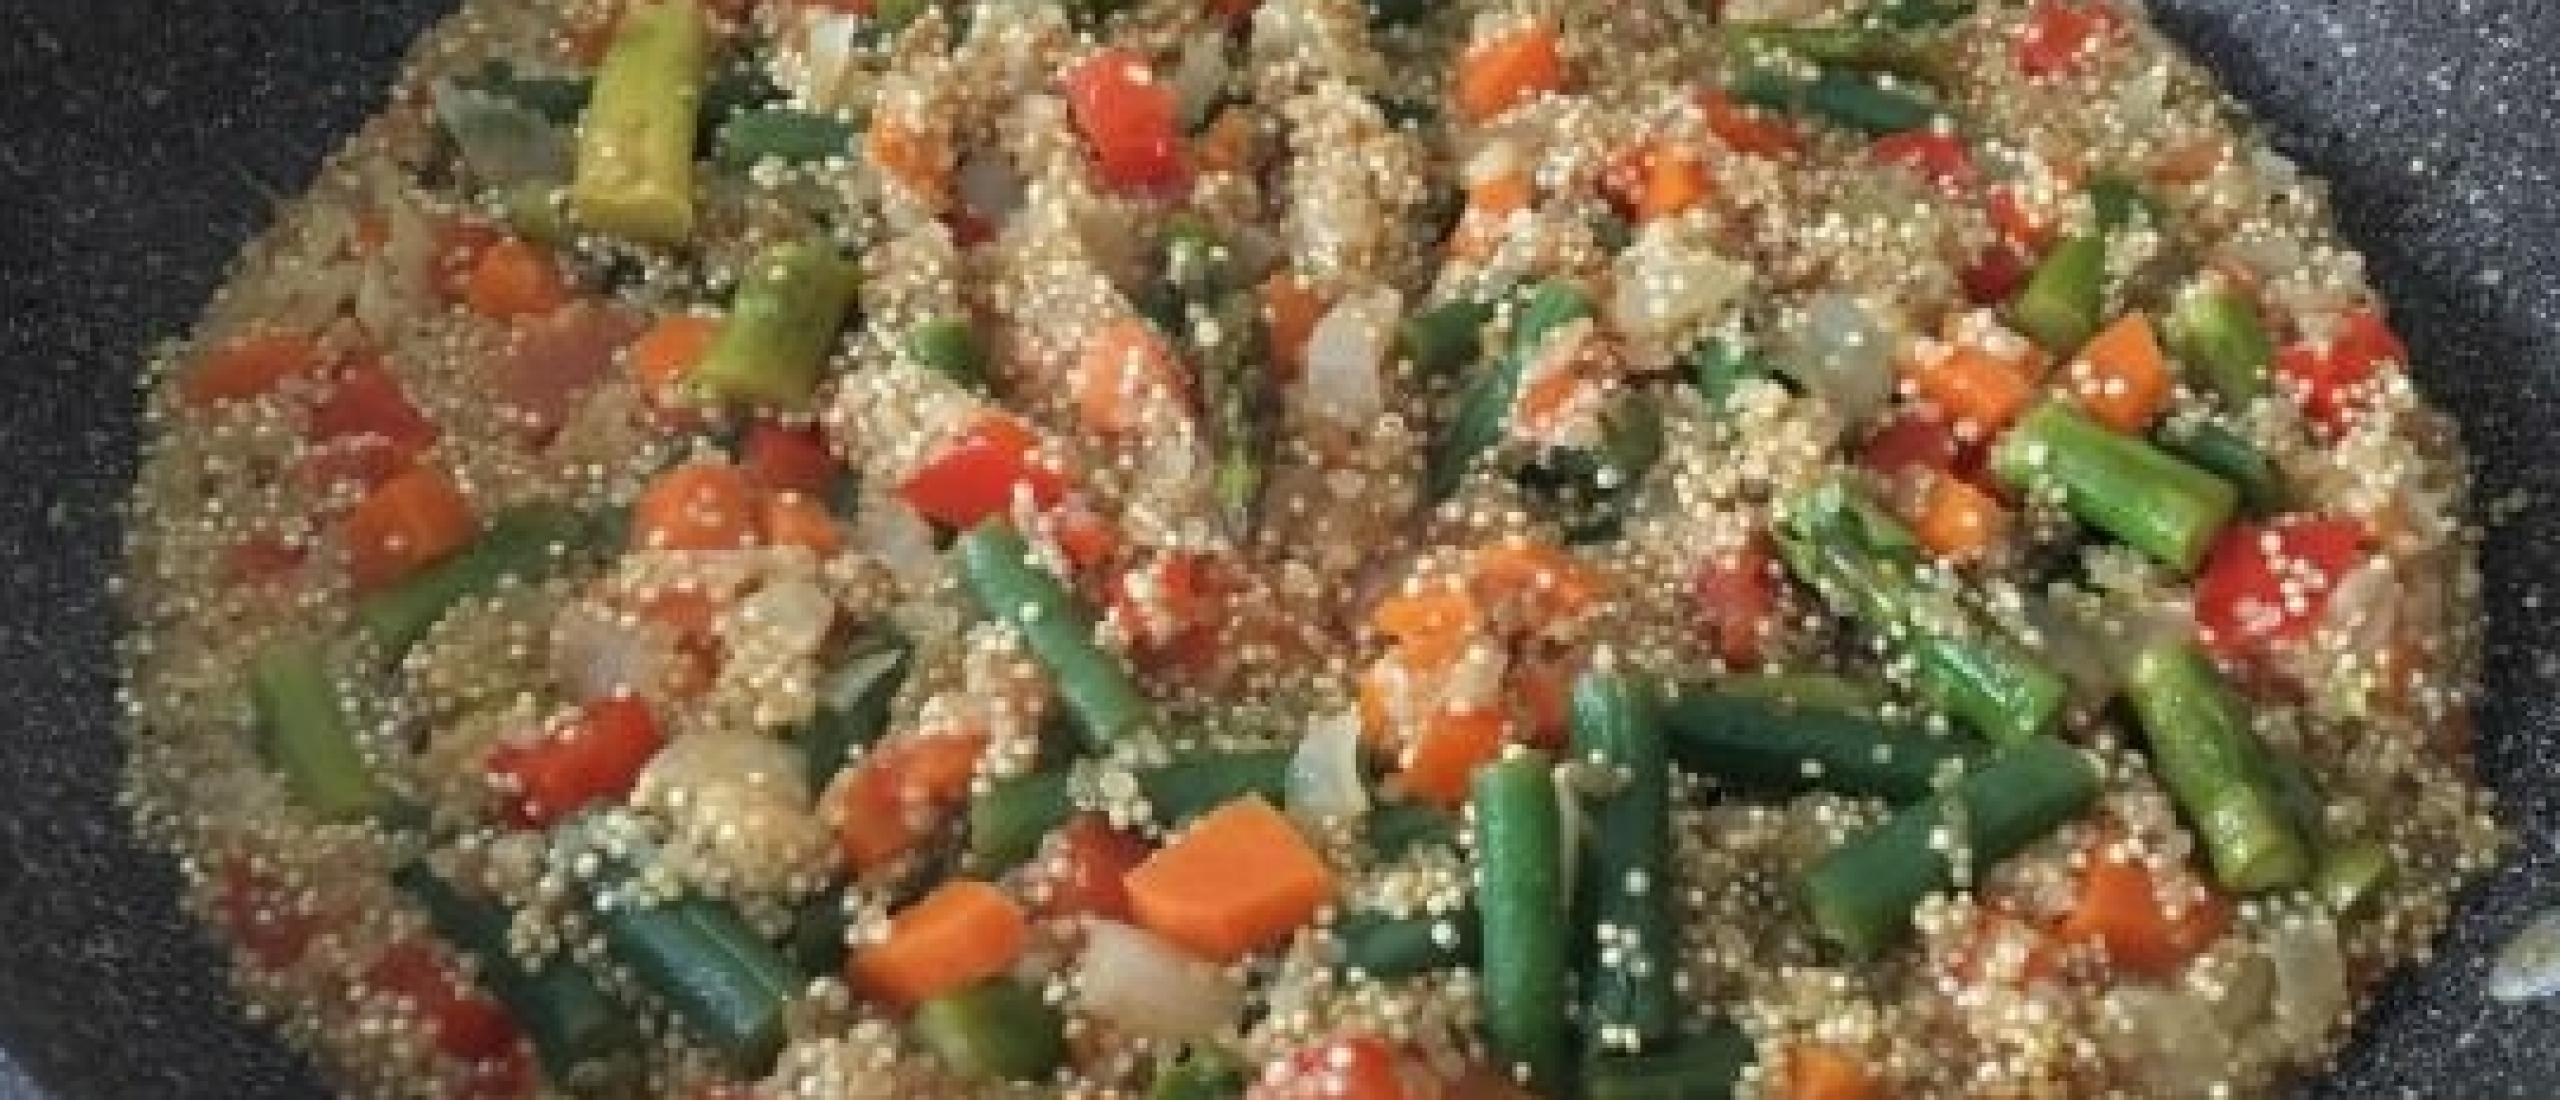 Veganistische paella met quinoa